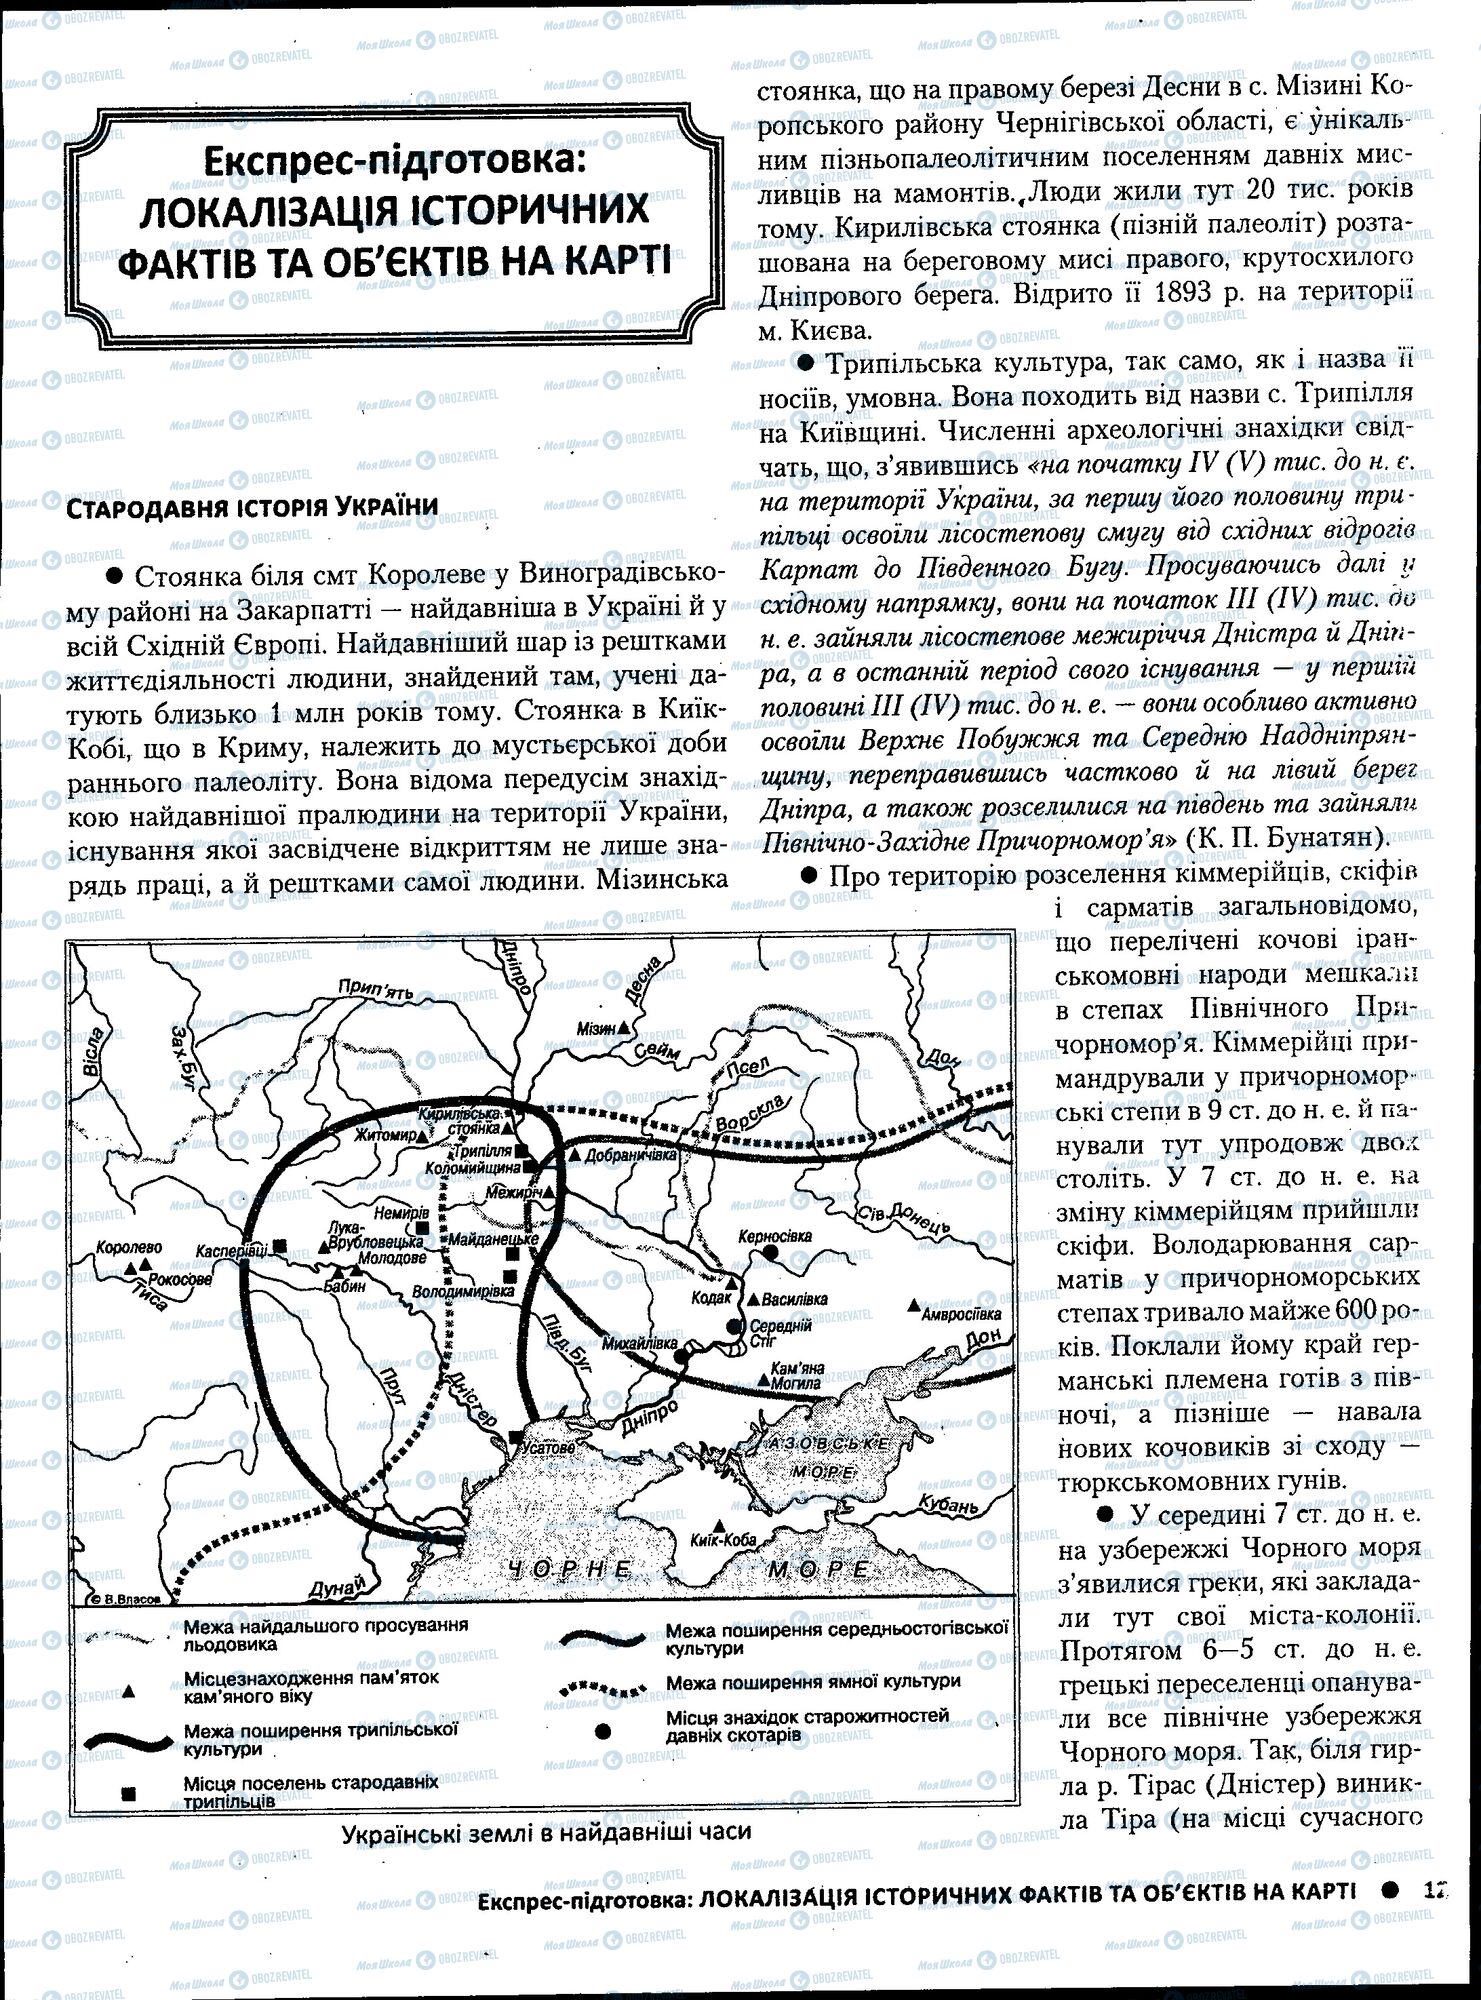 ЗНО Історія України 11 клас сторінка 129